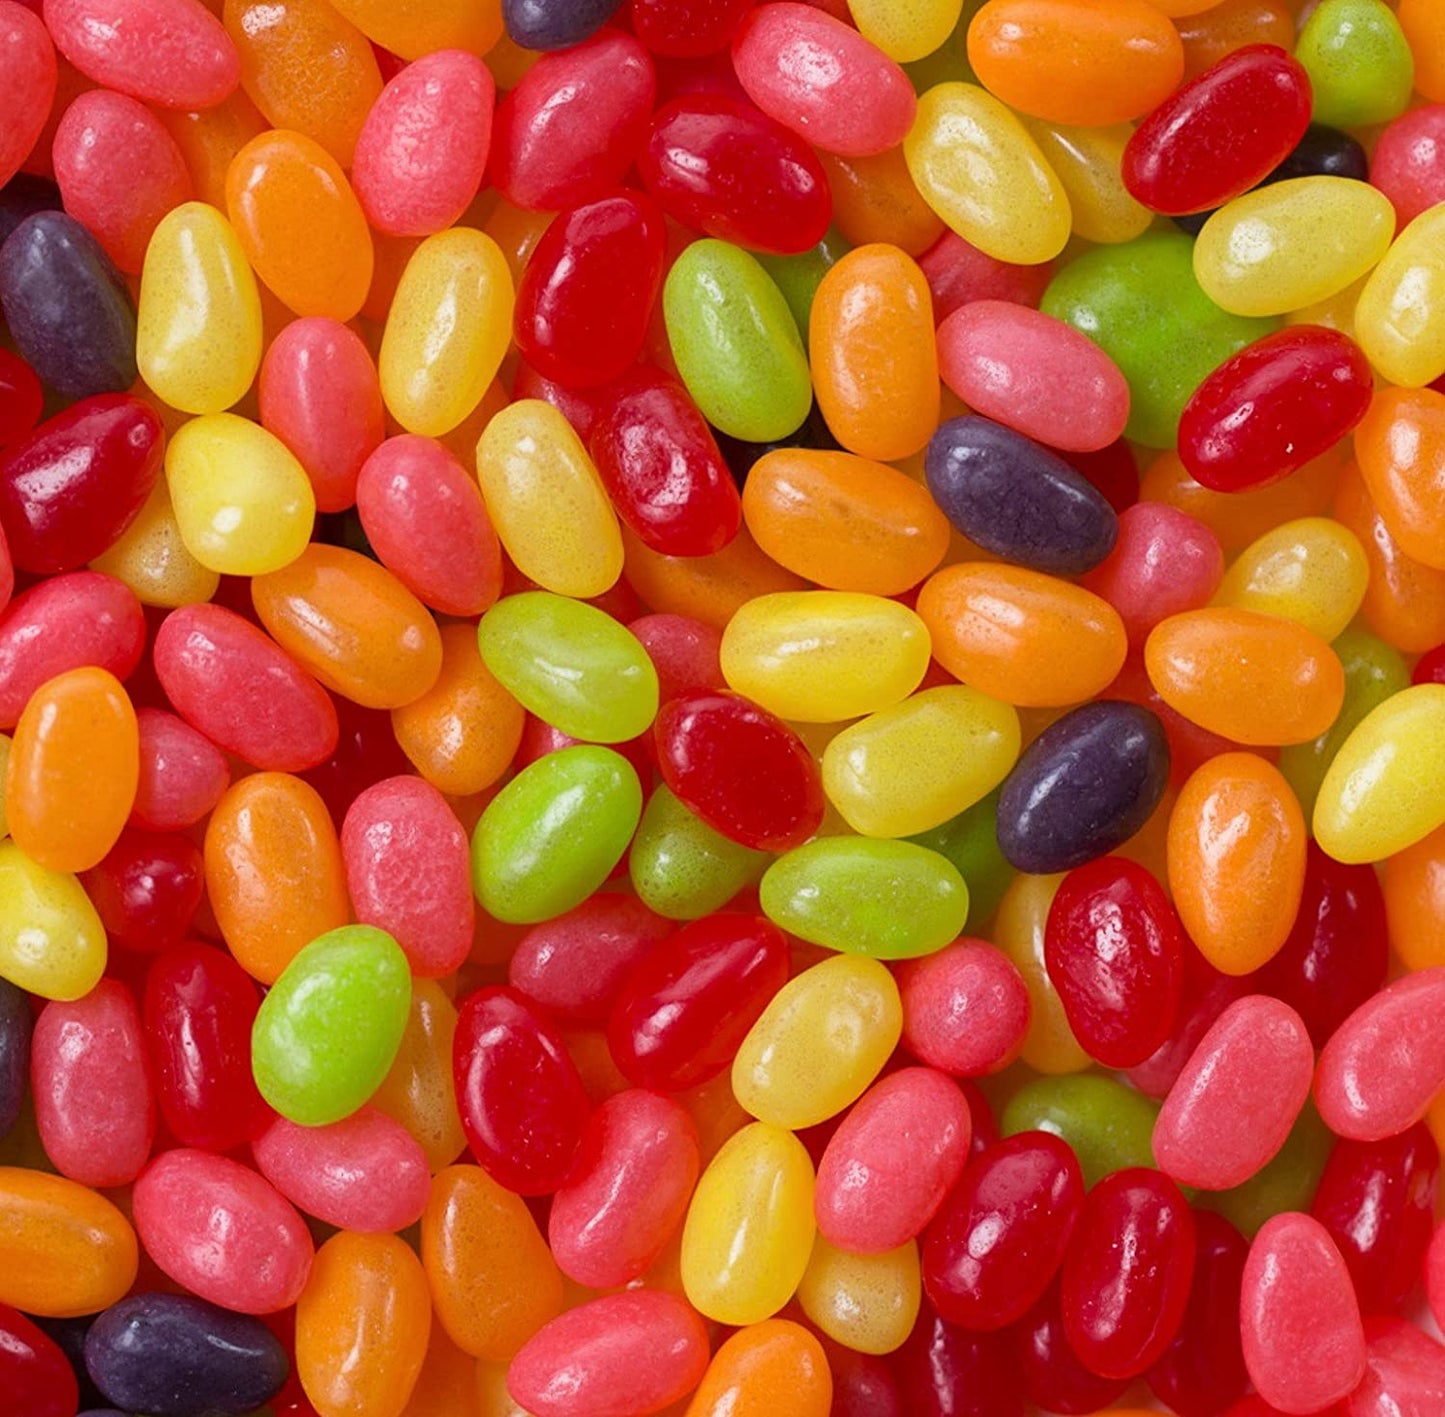 Teenee Beanee Jelly Beans, Americana Mix, 14oz.